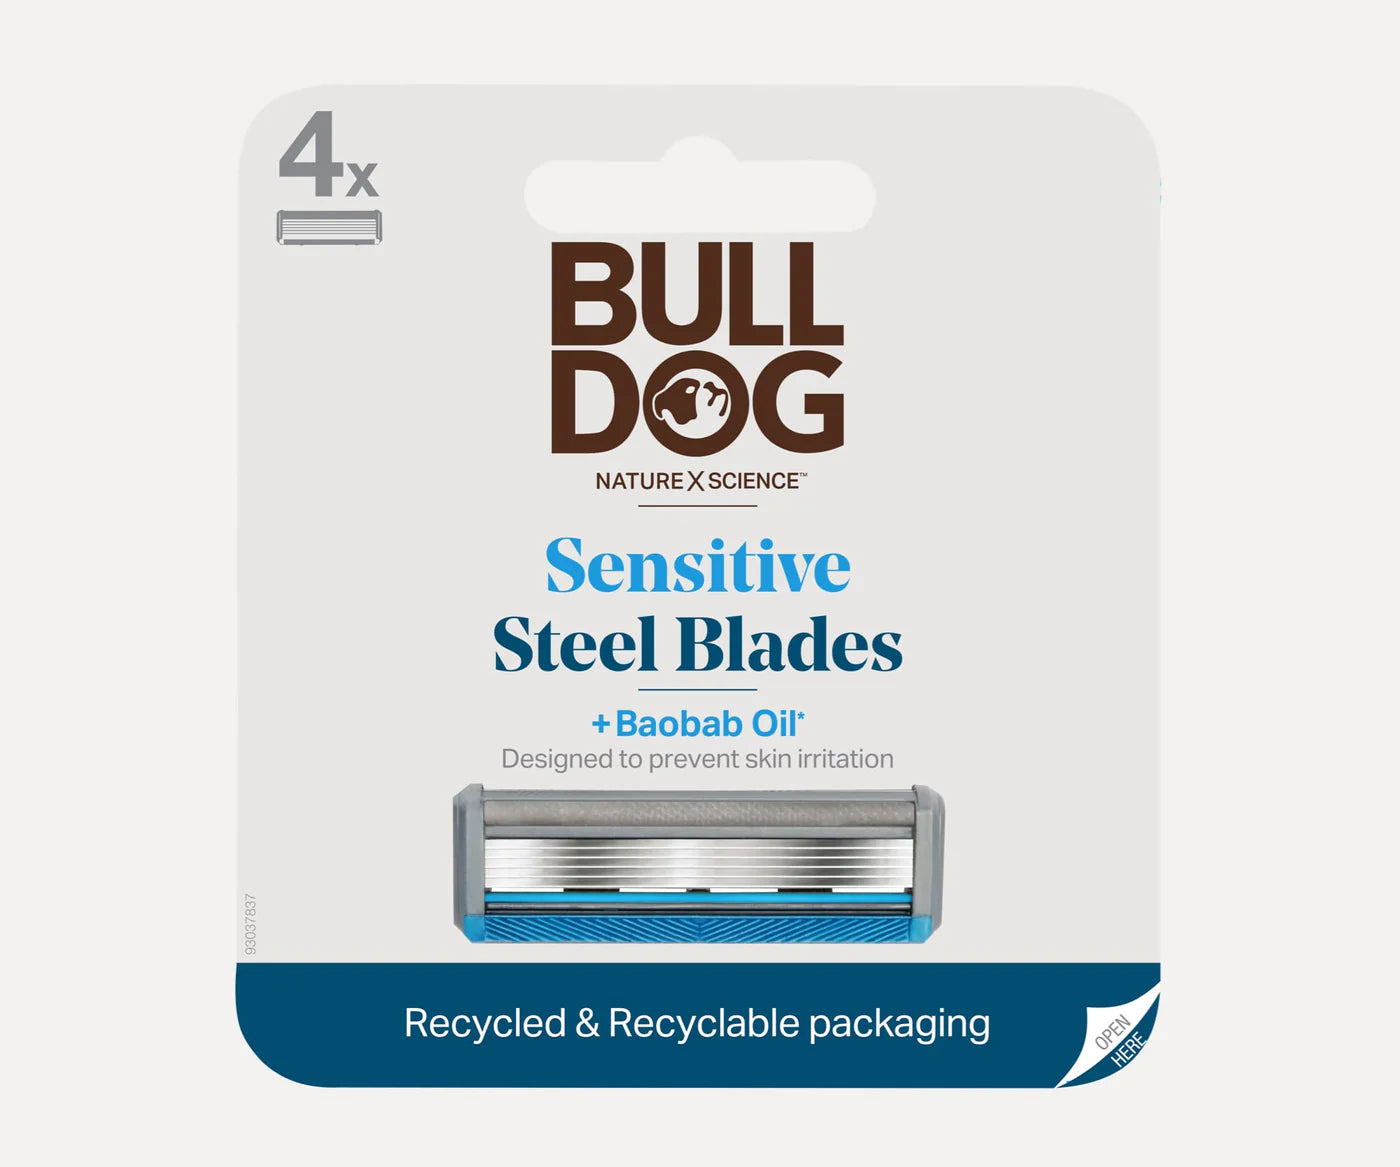 Bulldog Cartucho de Repuesto para Maquina de Afeitar Sensitive (4 Unidades)